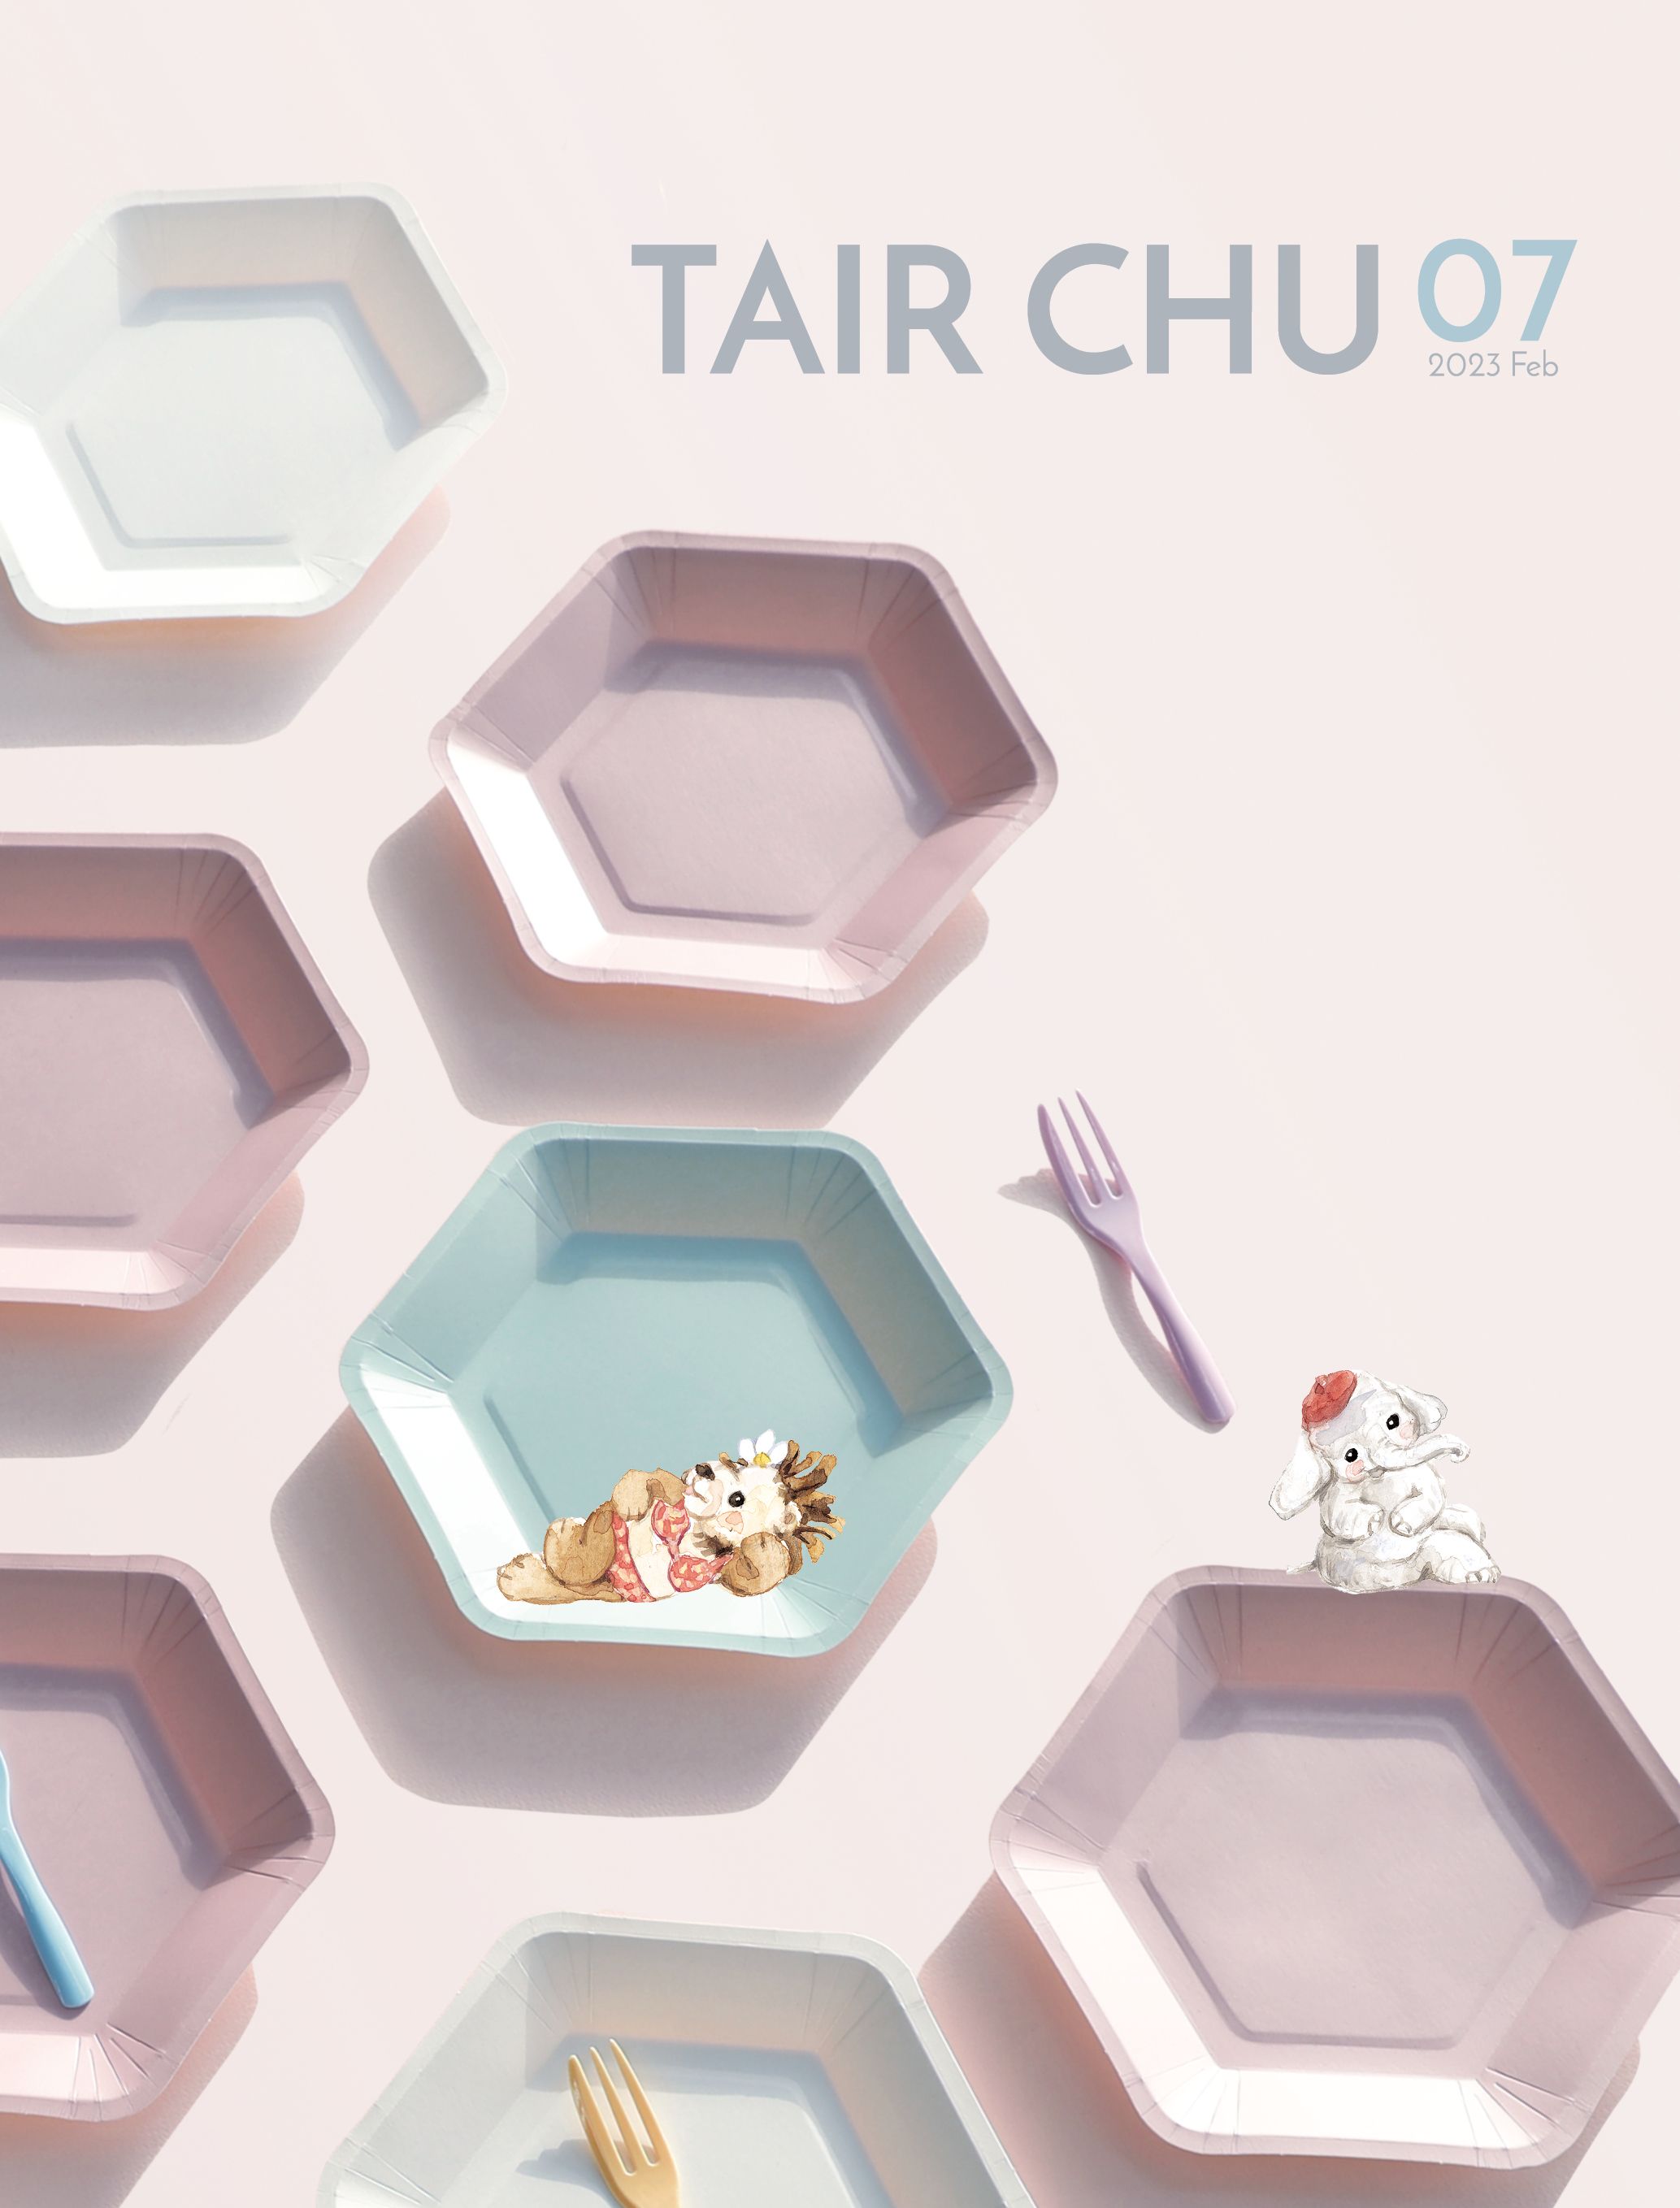 Каталог пластиковых столовых приборов и биоразлагаемой посуды Tair Chu для вечеринок 2023 года